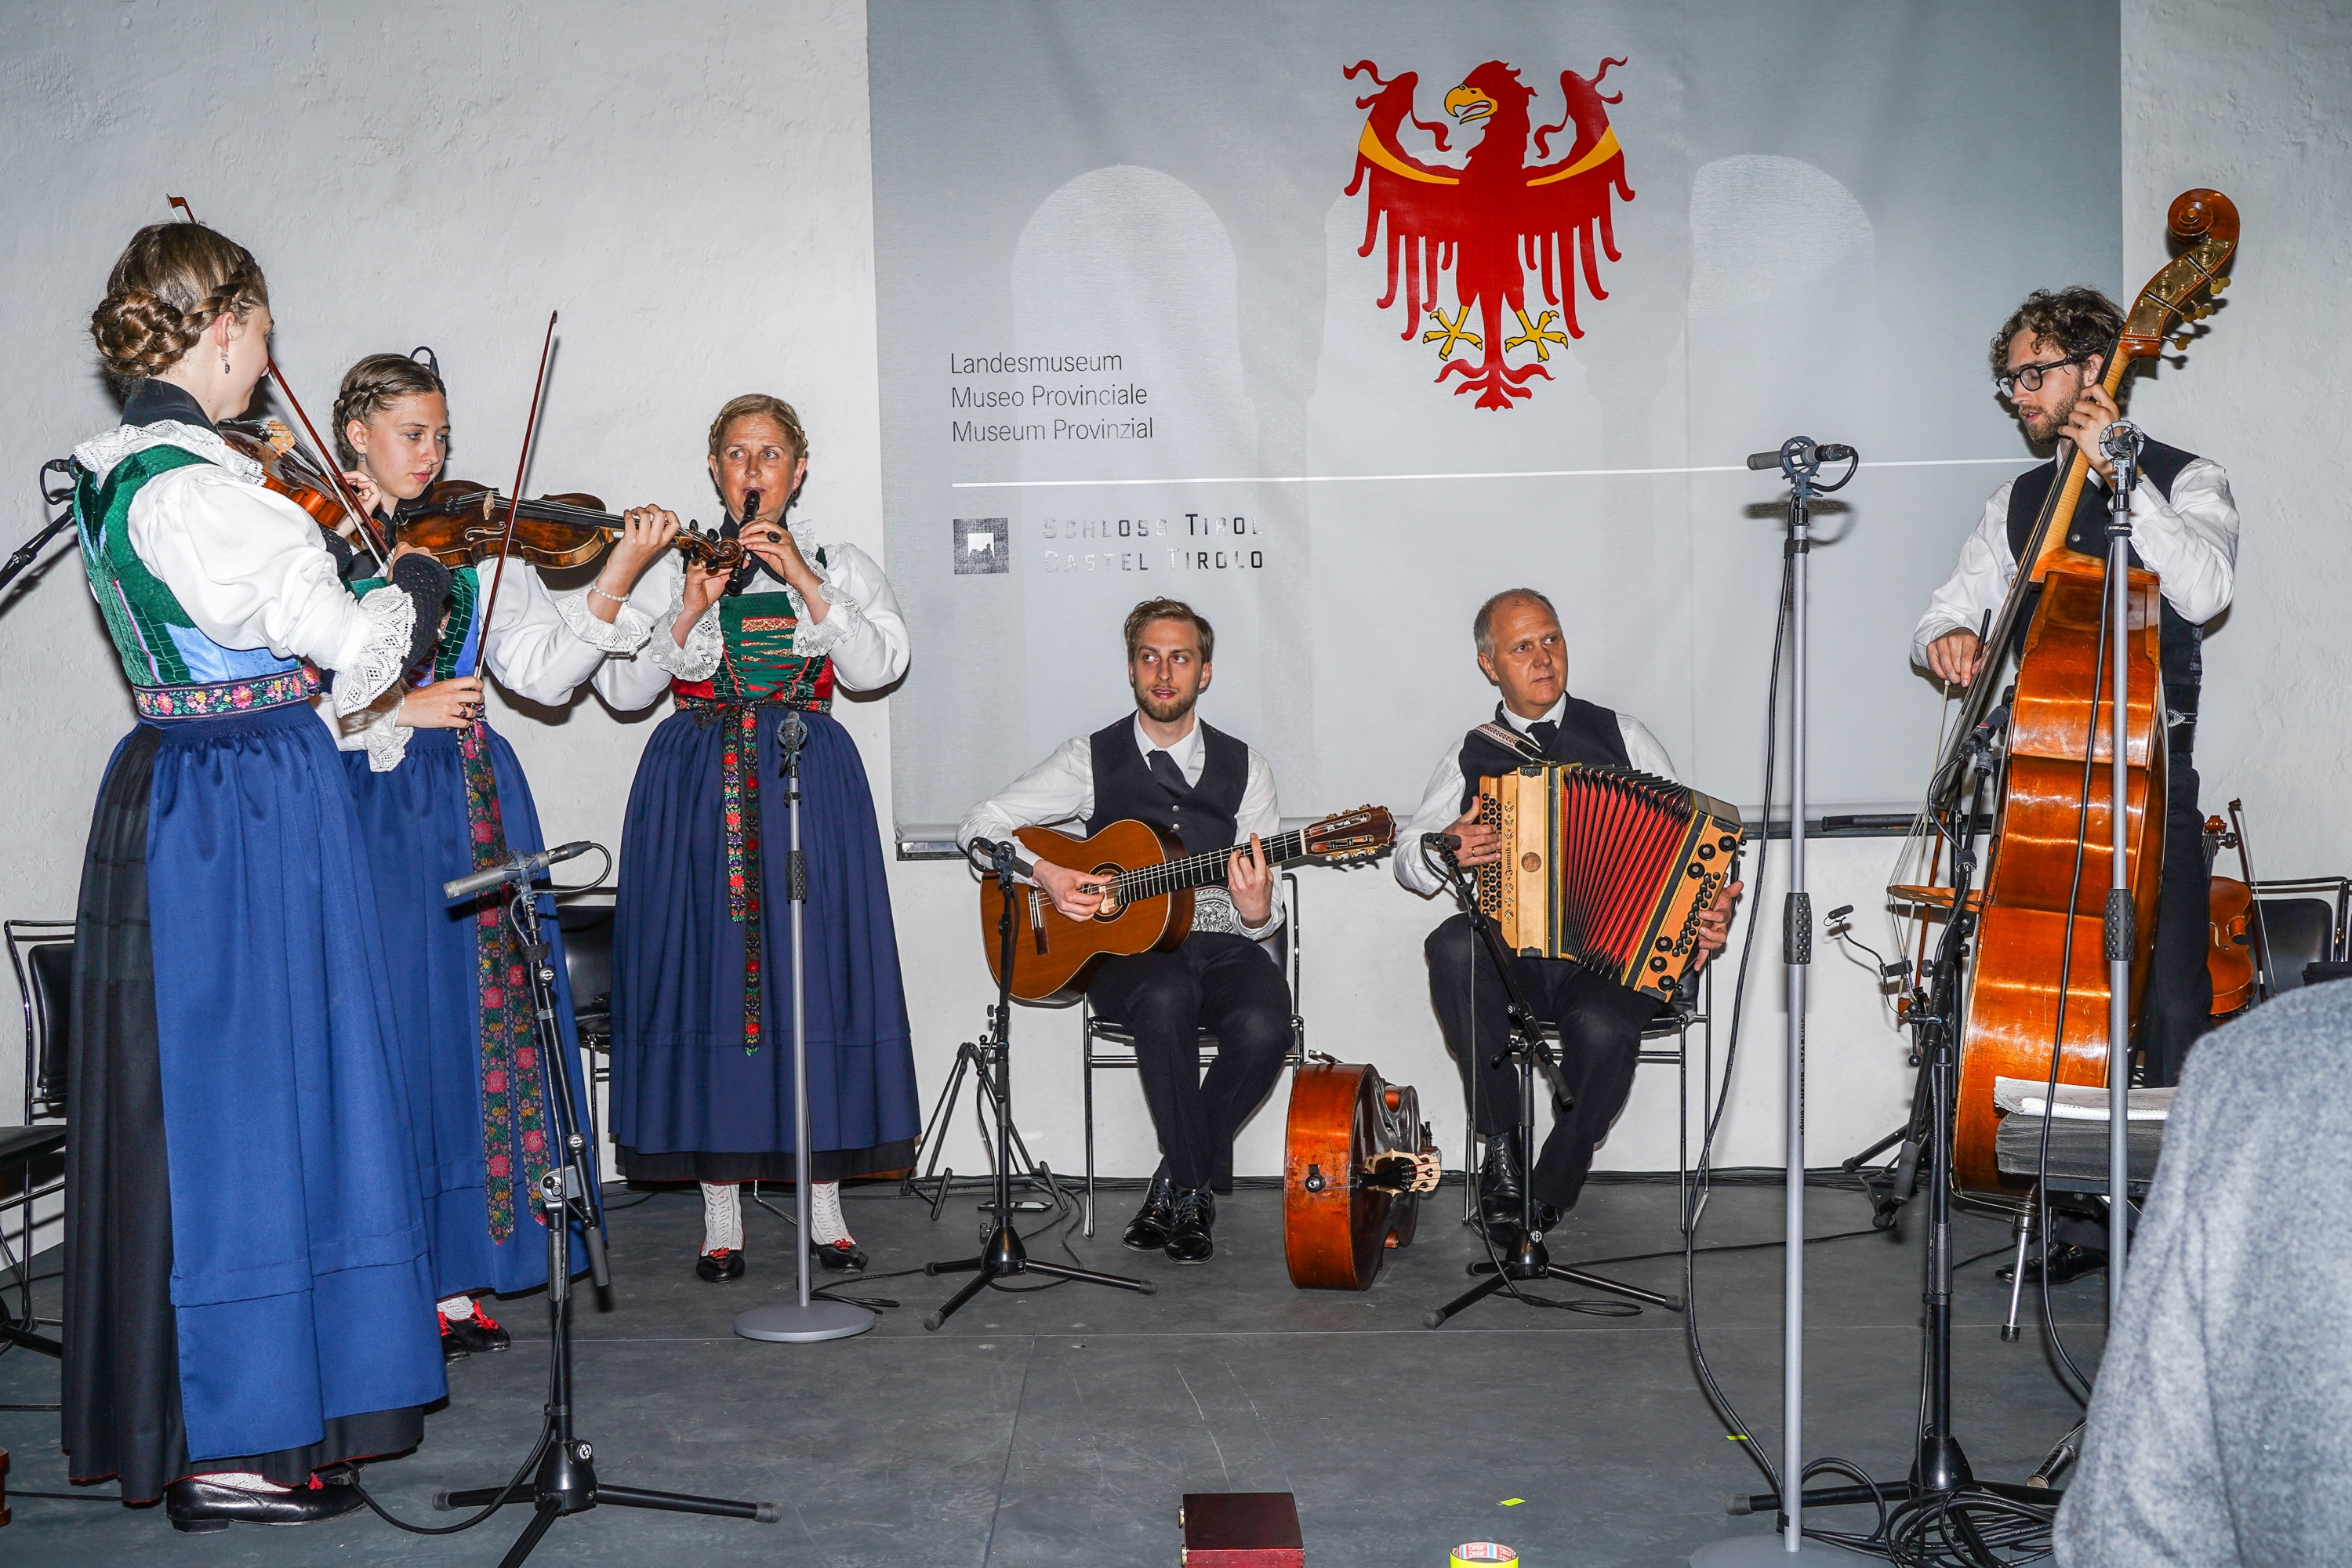 familienmusig Huber aus dem Ahrntal beim musizieren im Rittersaal von Schloss Tirol 002kl